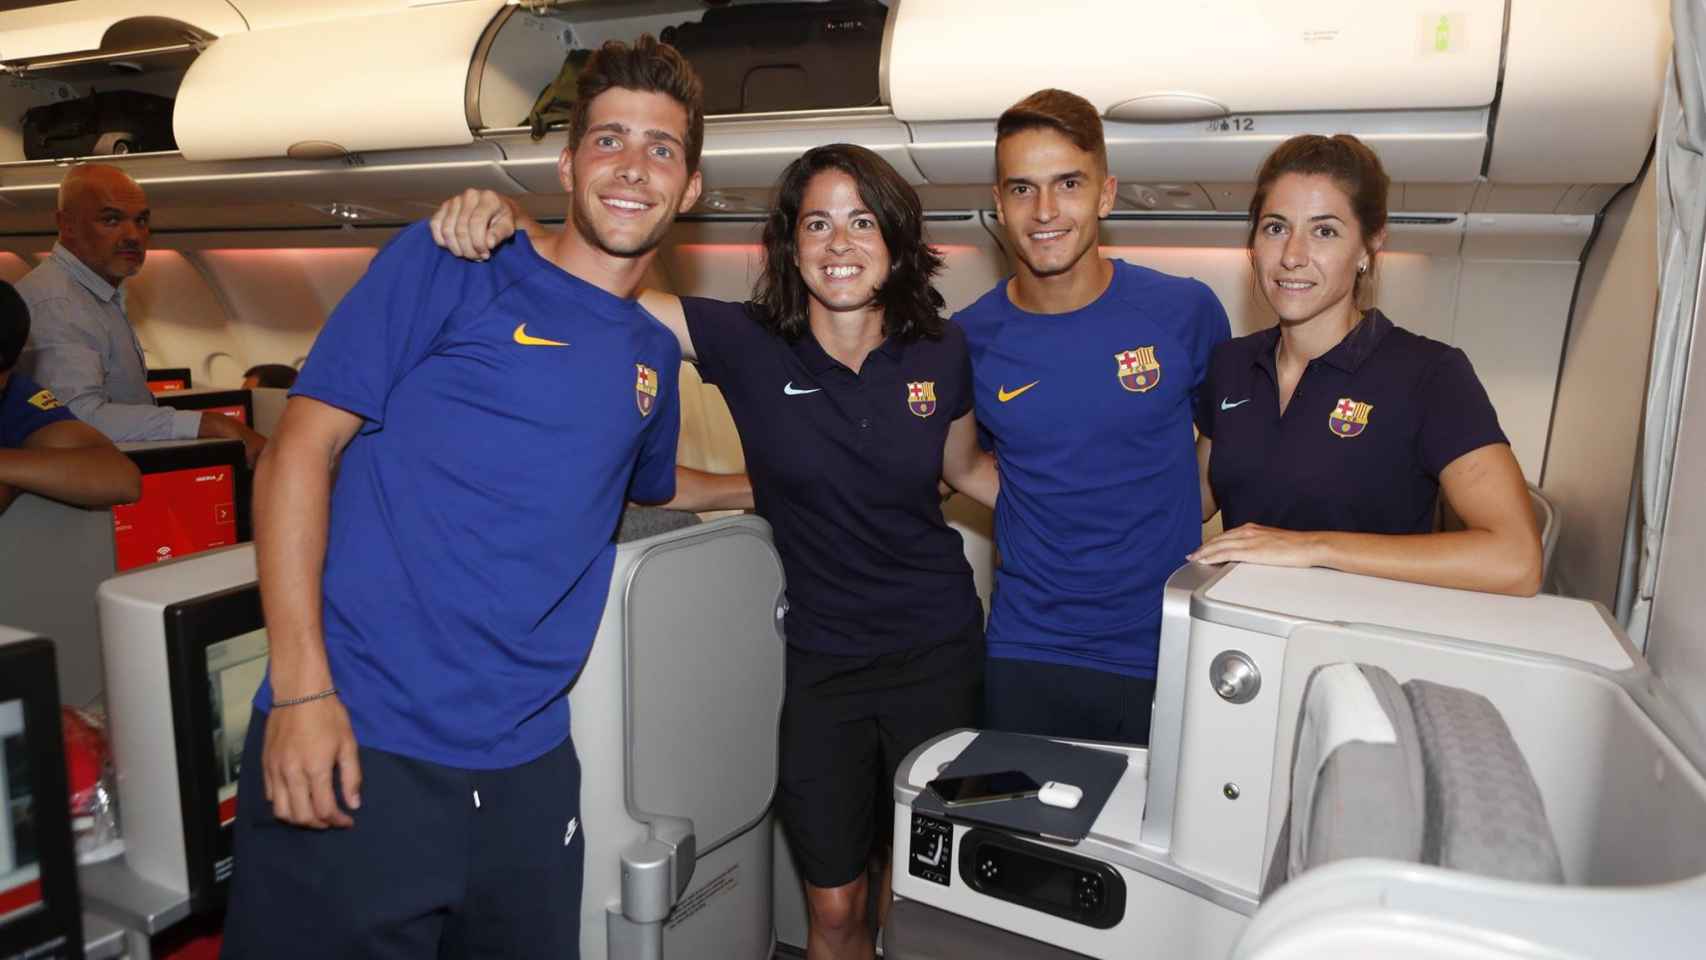 Una rectificación del Barça, un triunfo del fútbol femenino